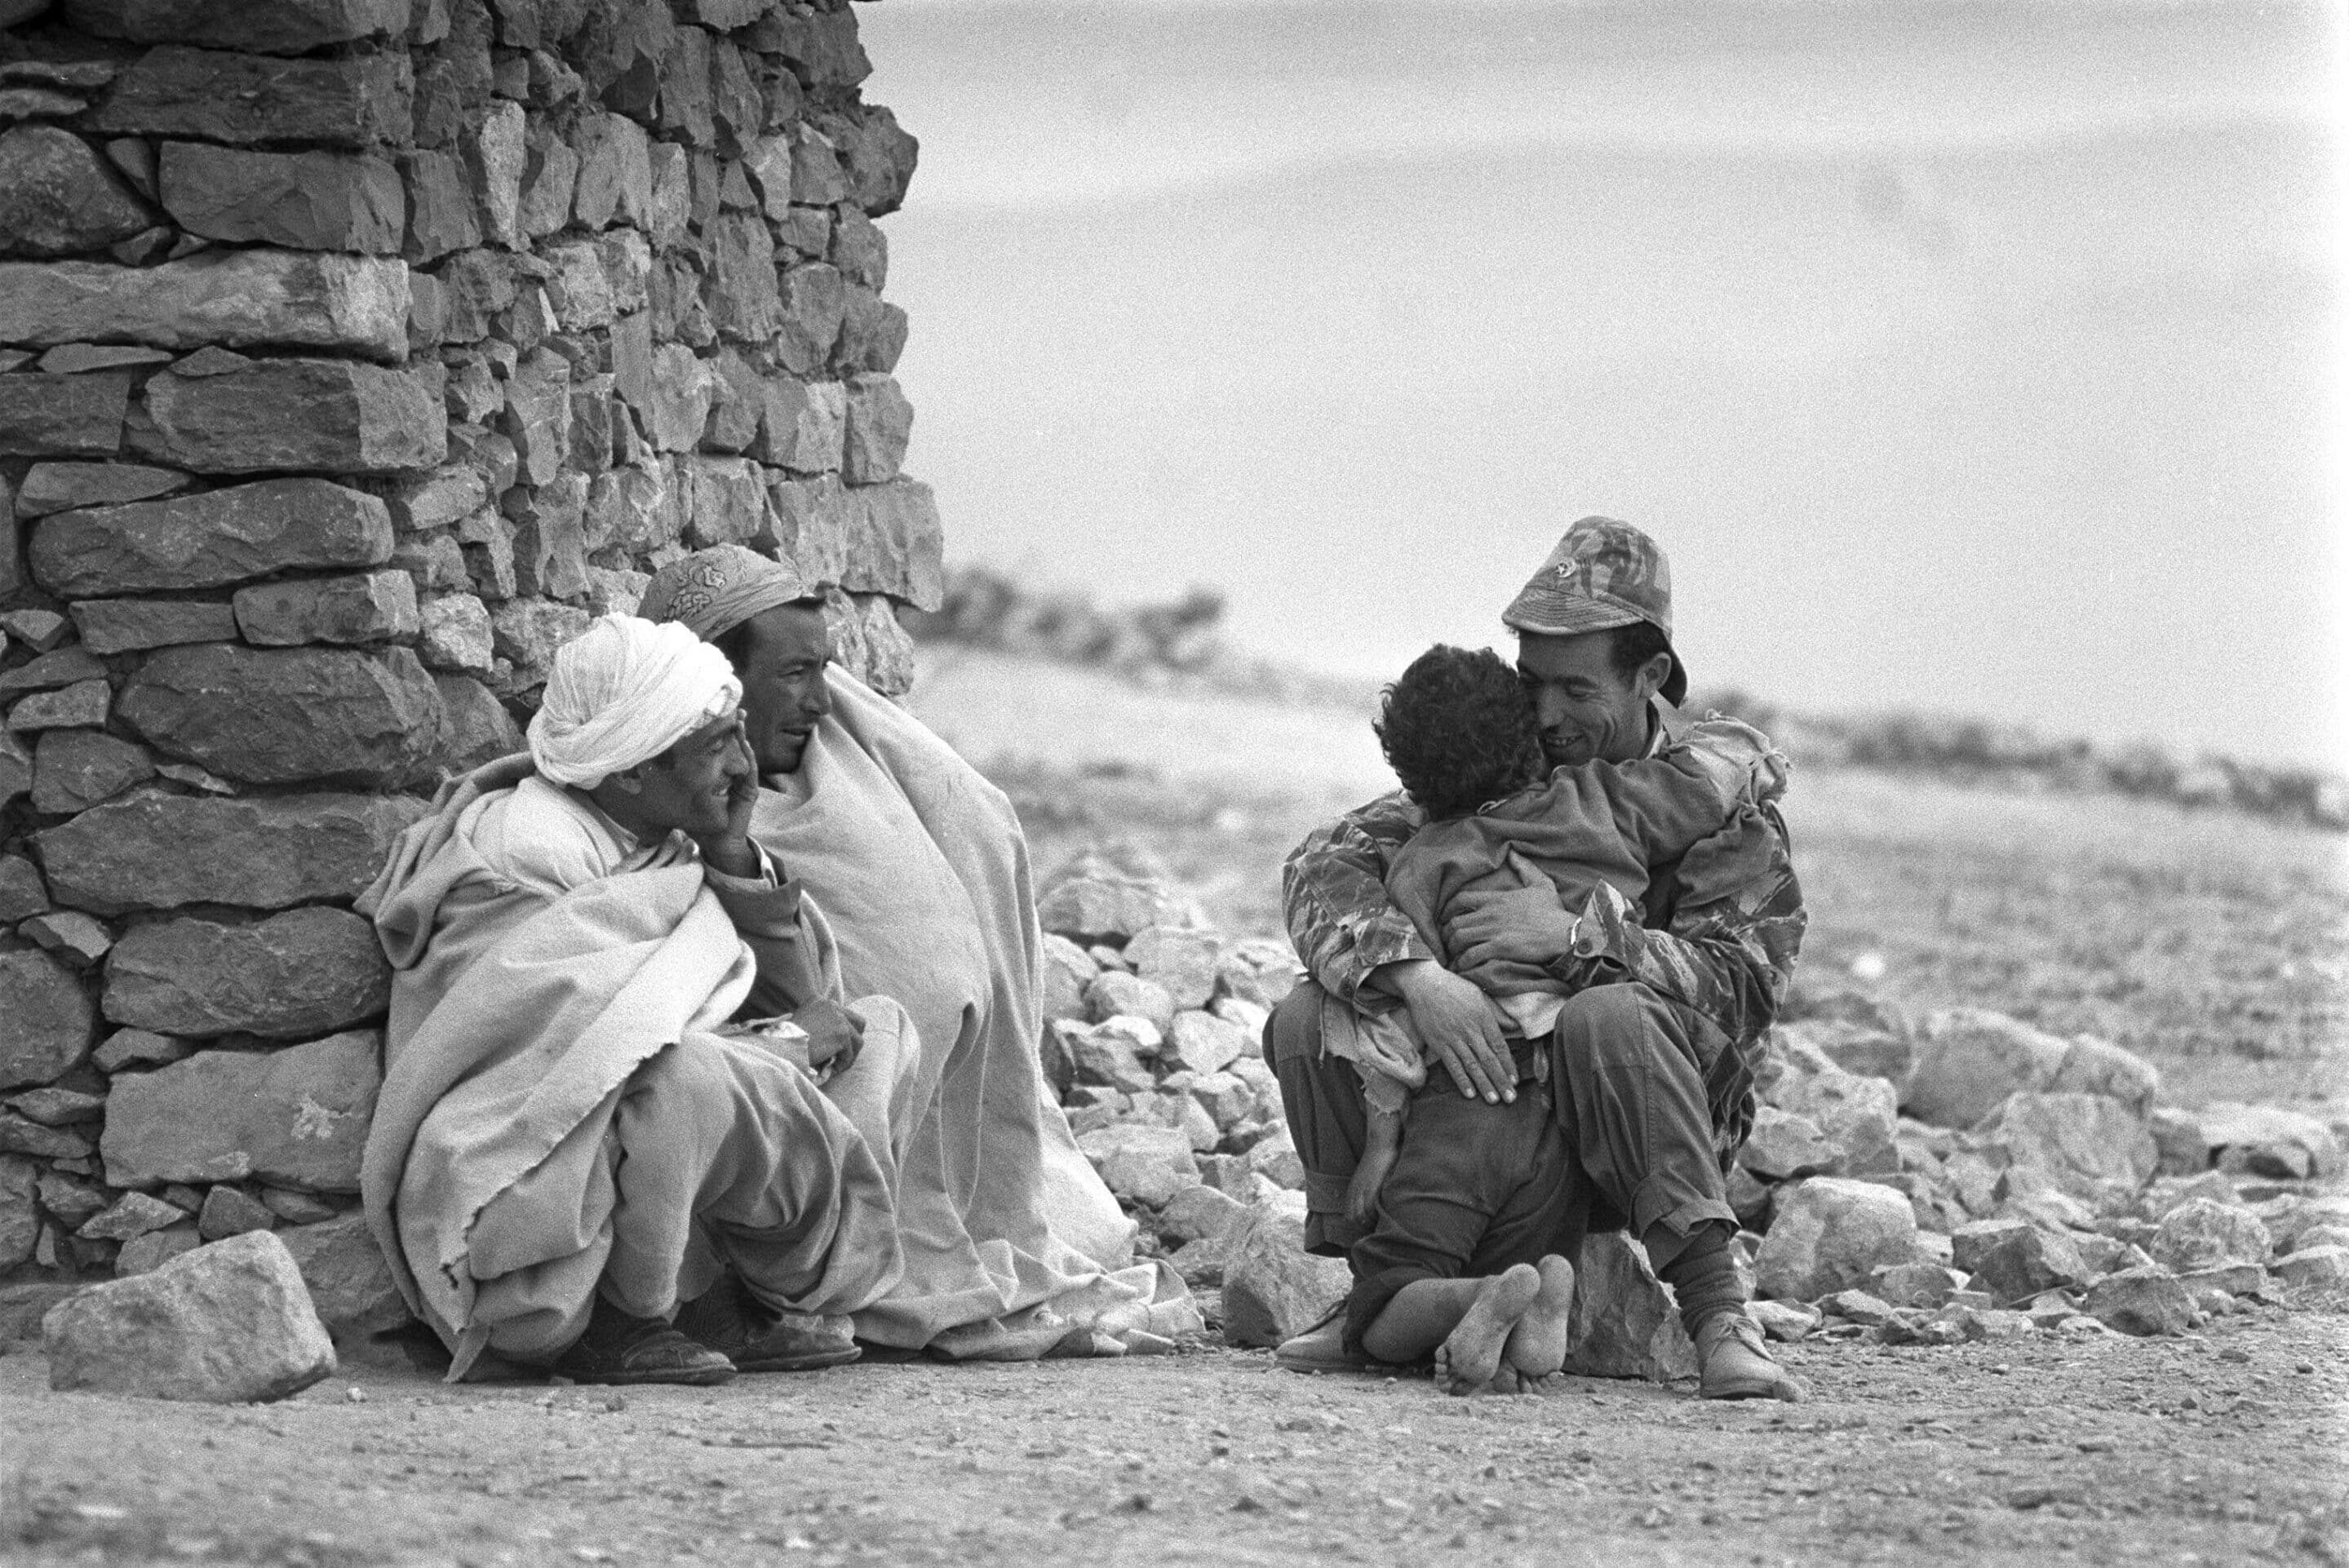 Guerre d'Algérie. Soldats de l'ALN en Kabylie en avril 1962.
LE CAMPION/SIPA